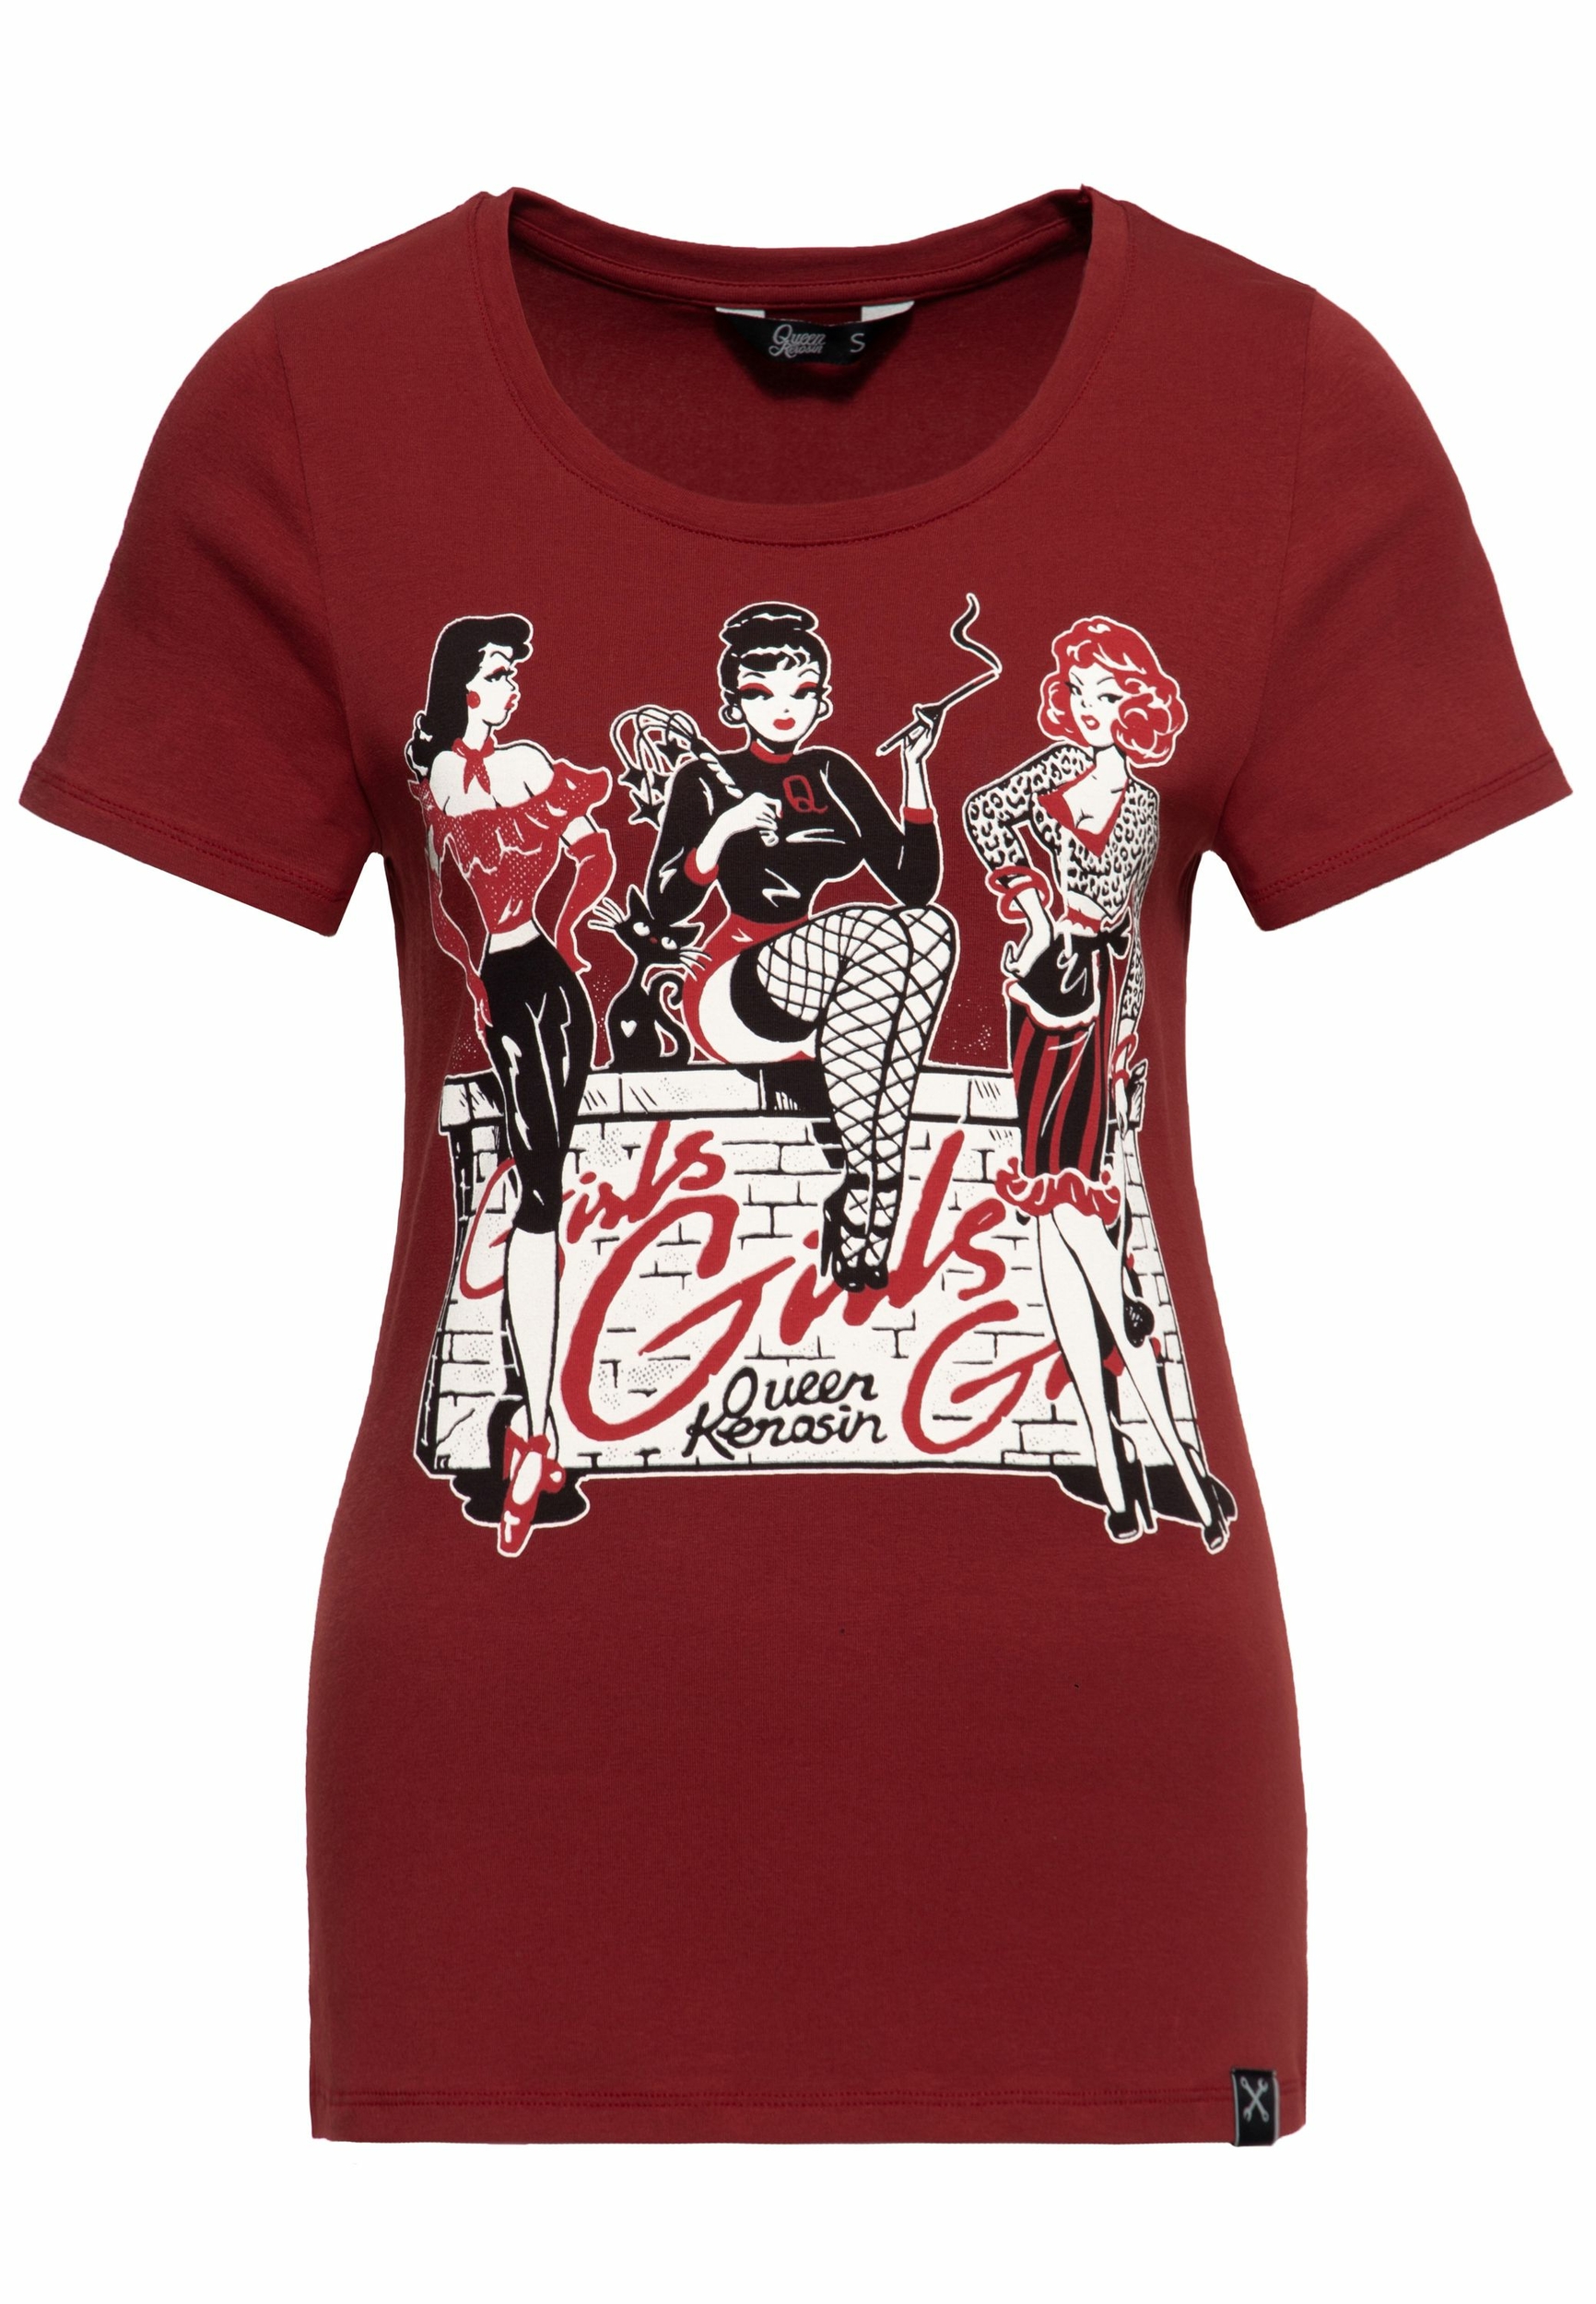 QK21023_tee-shirt-rockabilly-pinup-queen-kerosin-girls-girls-girls